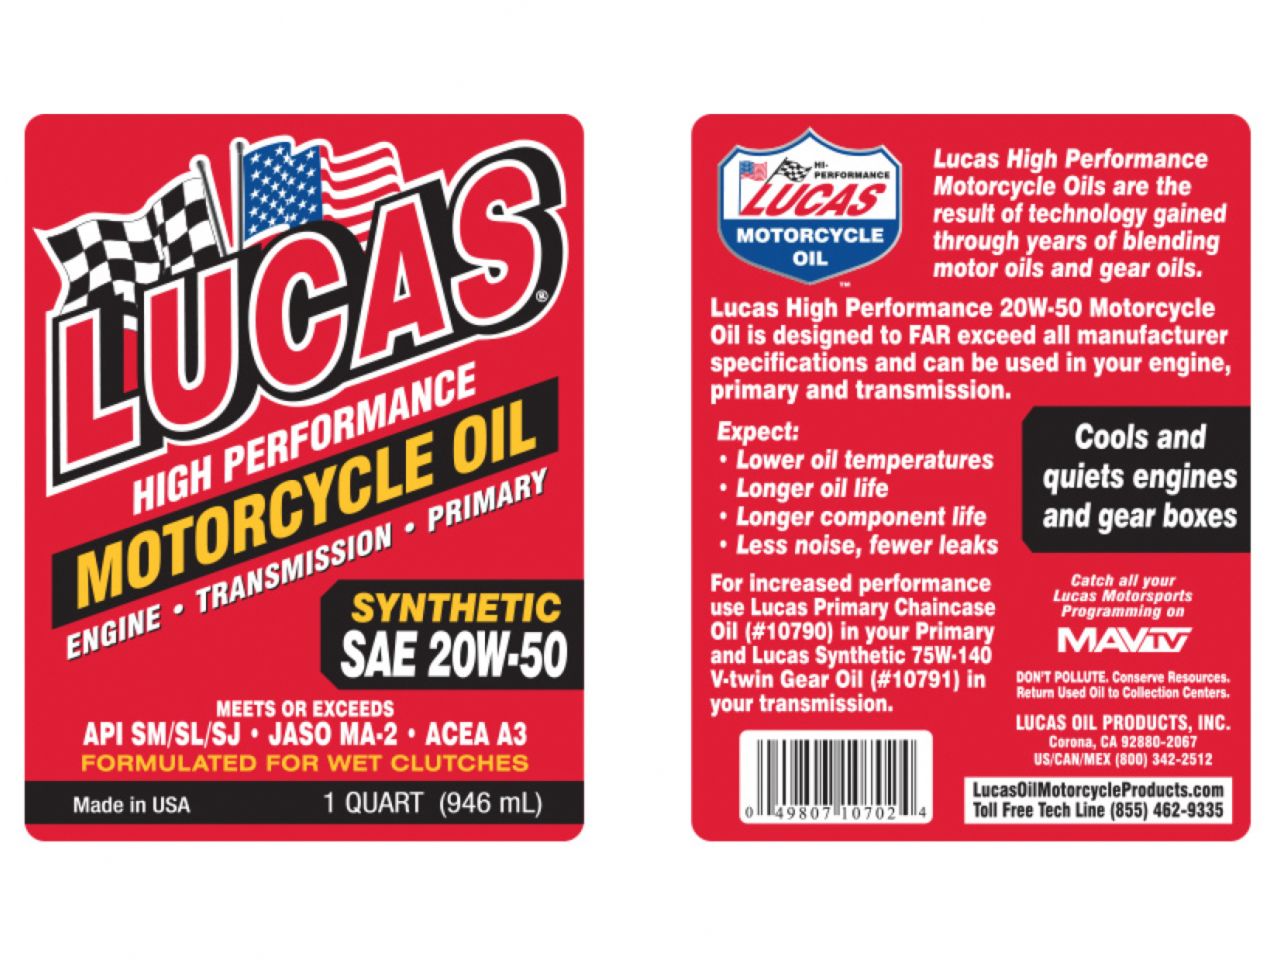 Lucas Oil 20W-50 Motorcycle Oil